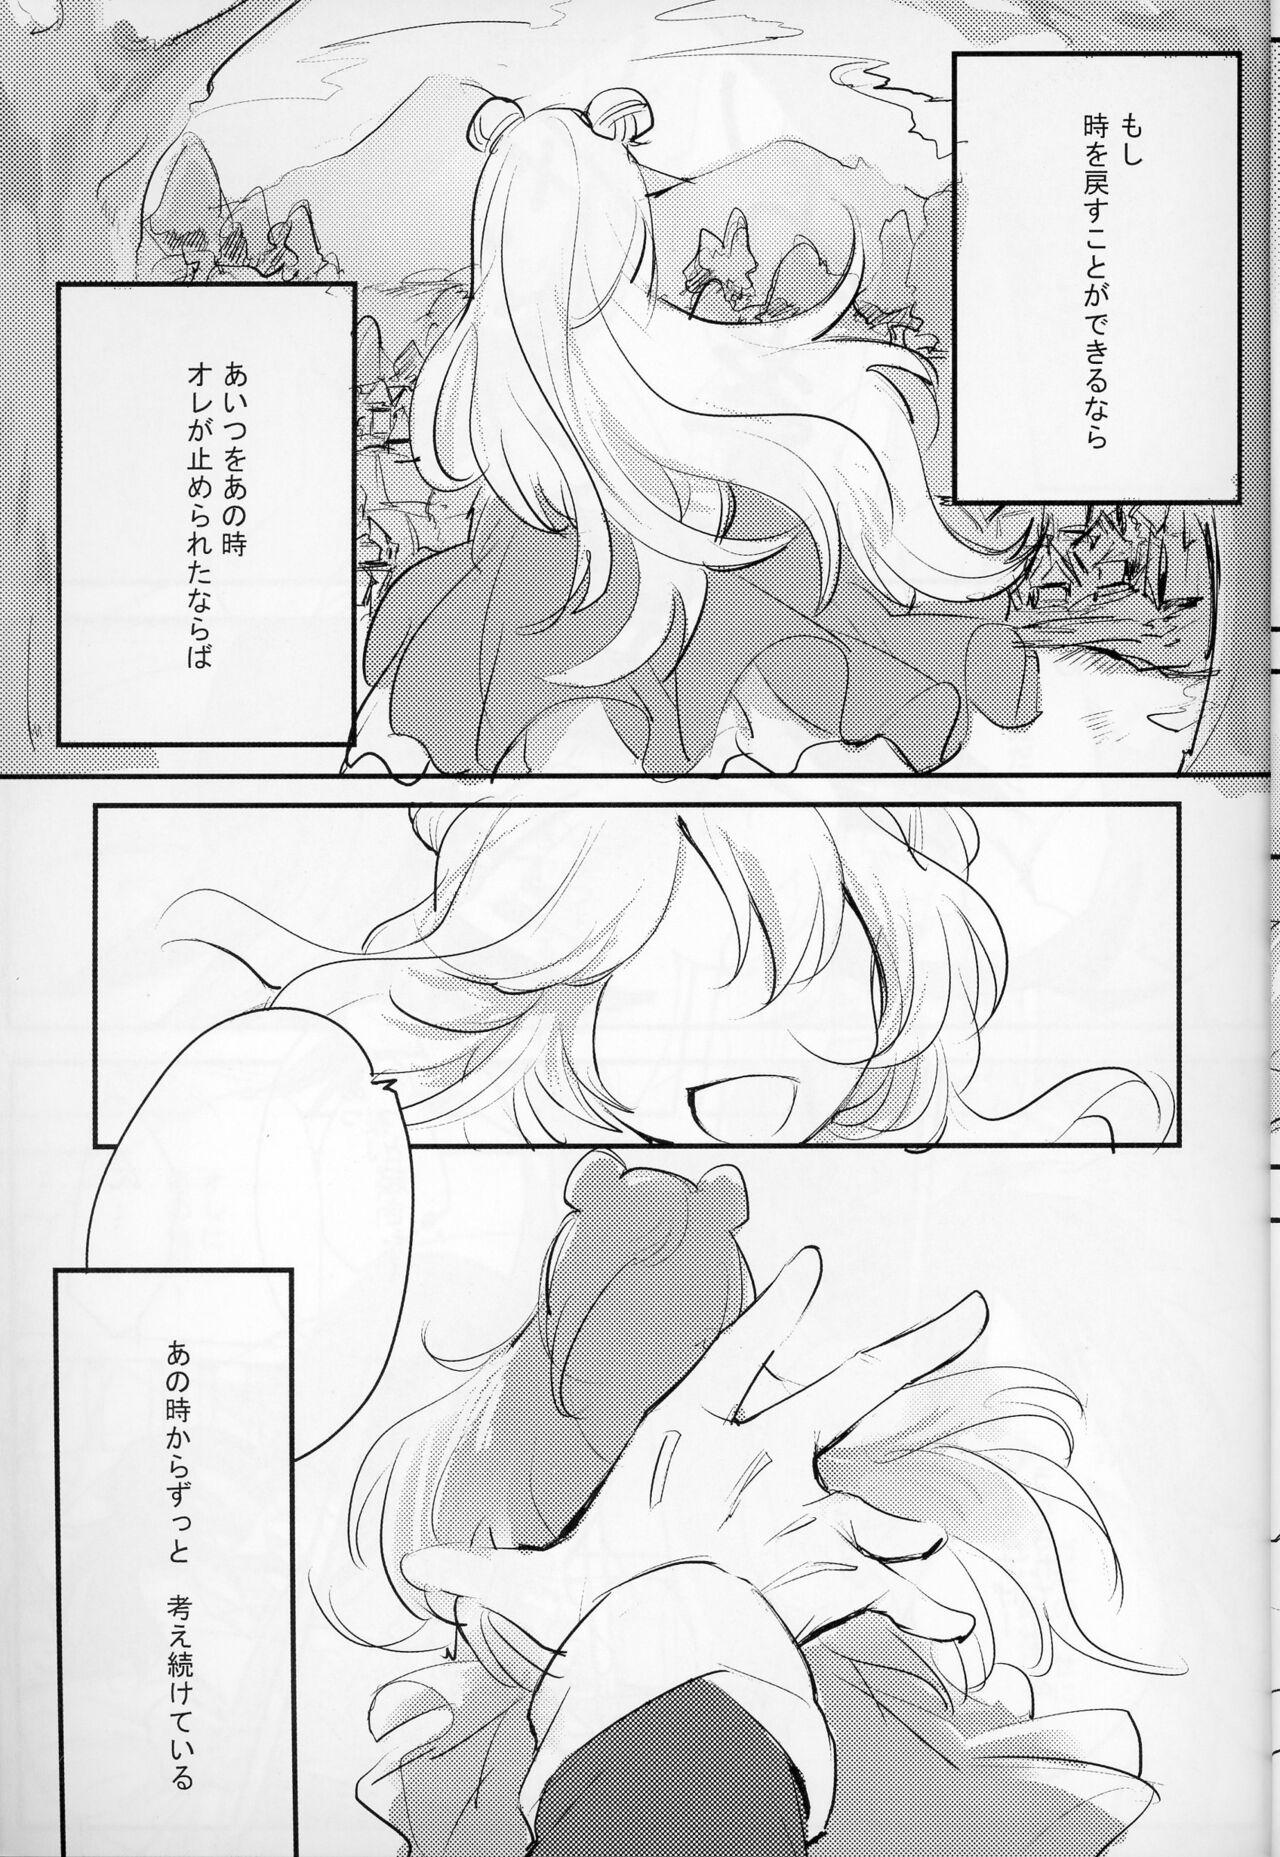 Tits Pleasure - Kaitou joker Style - Page 8